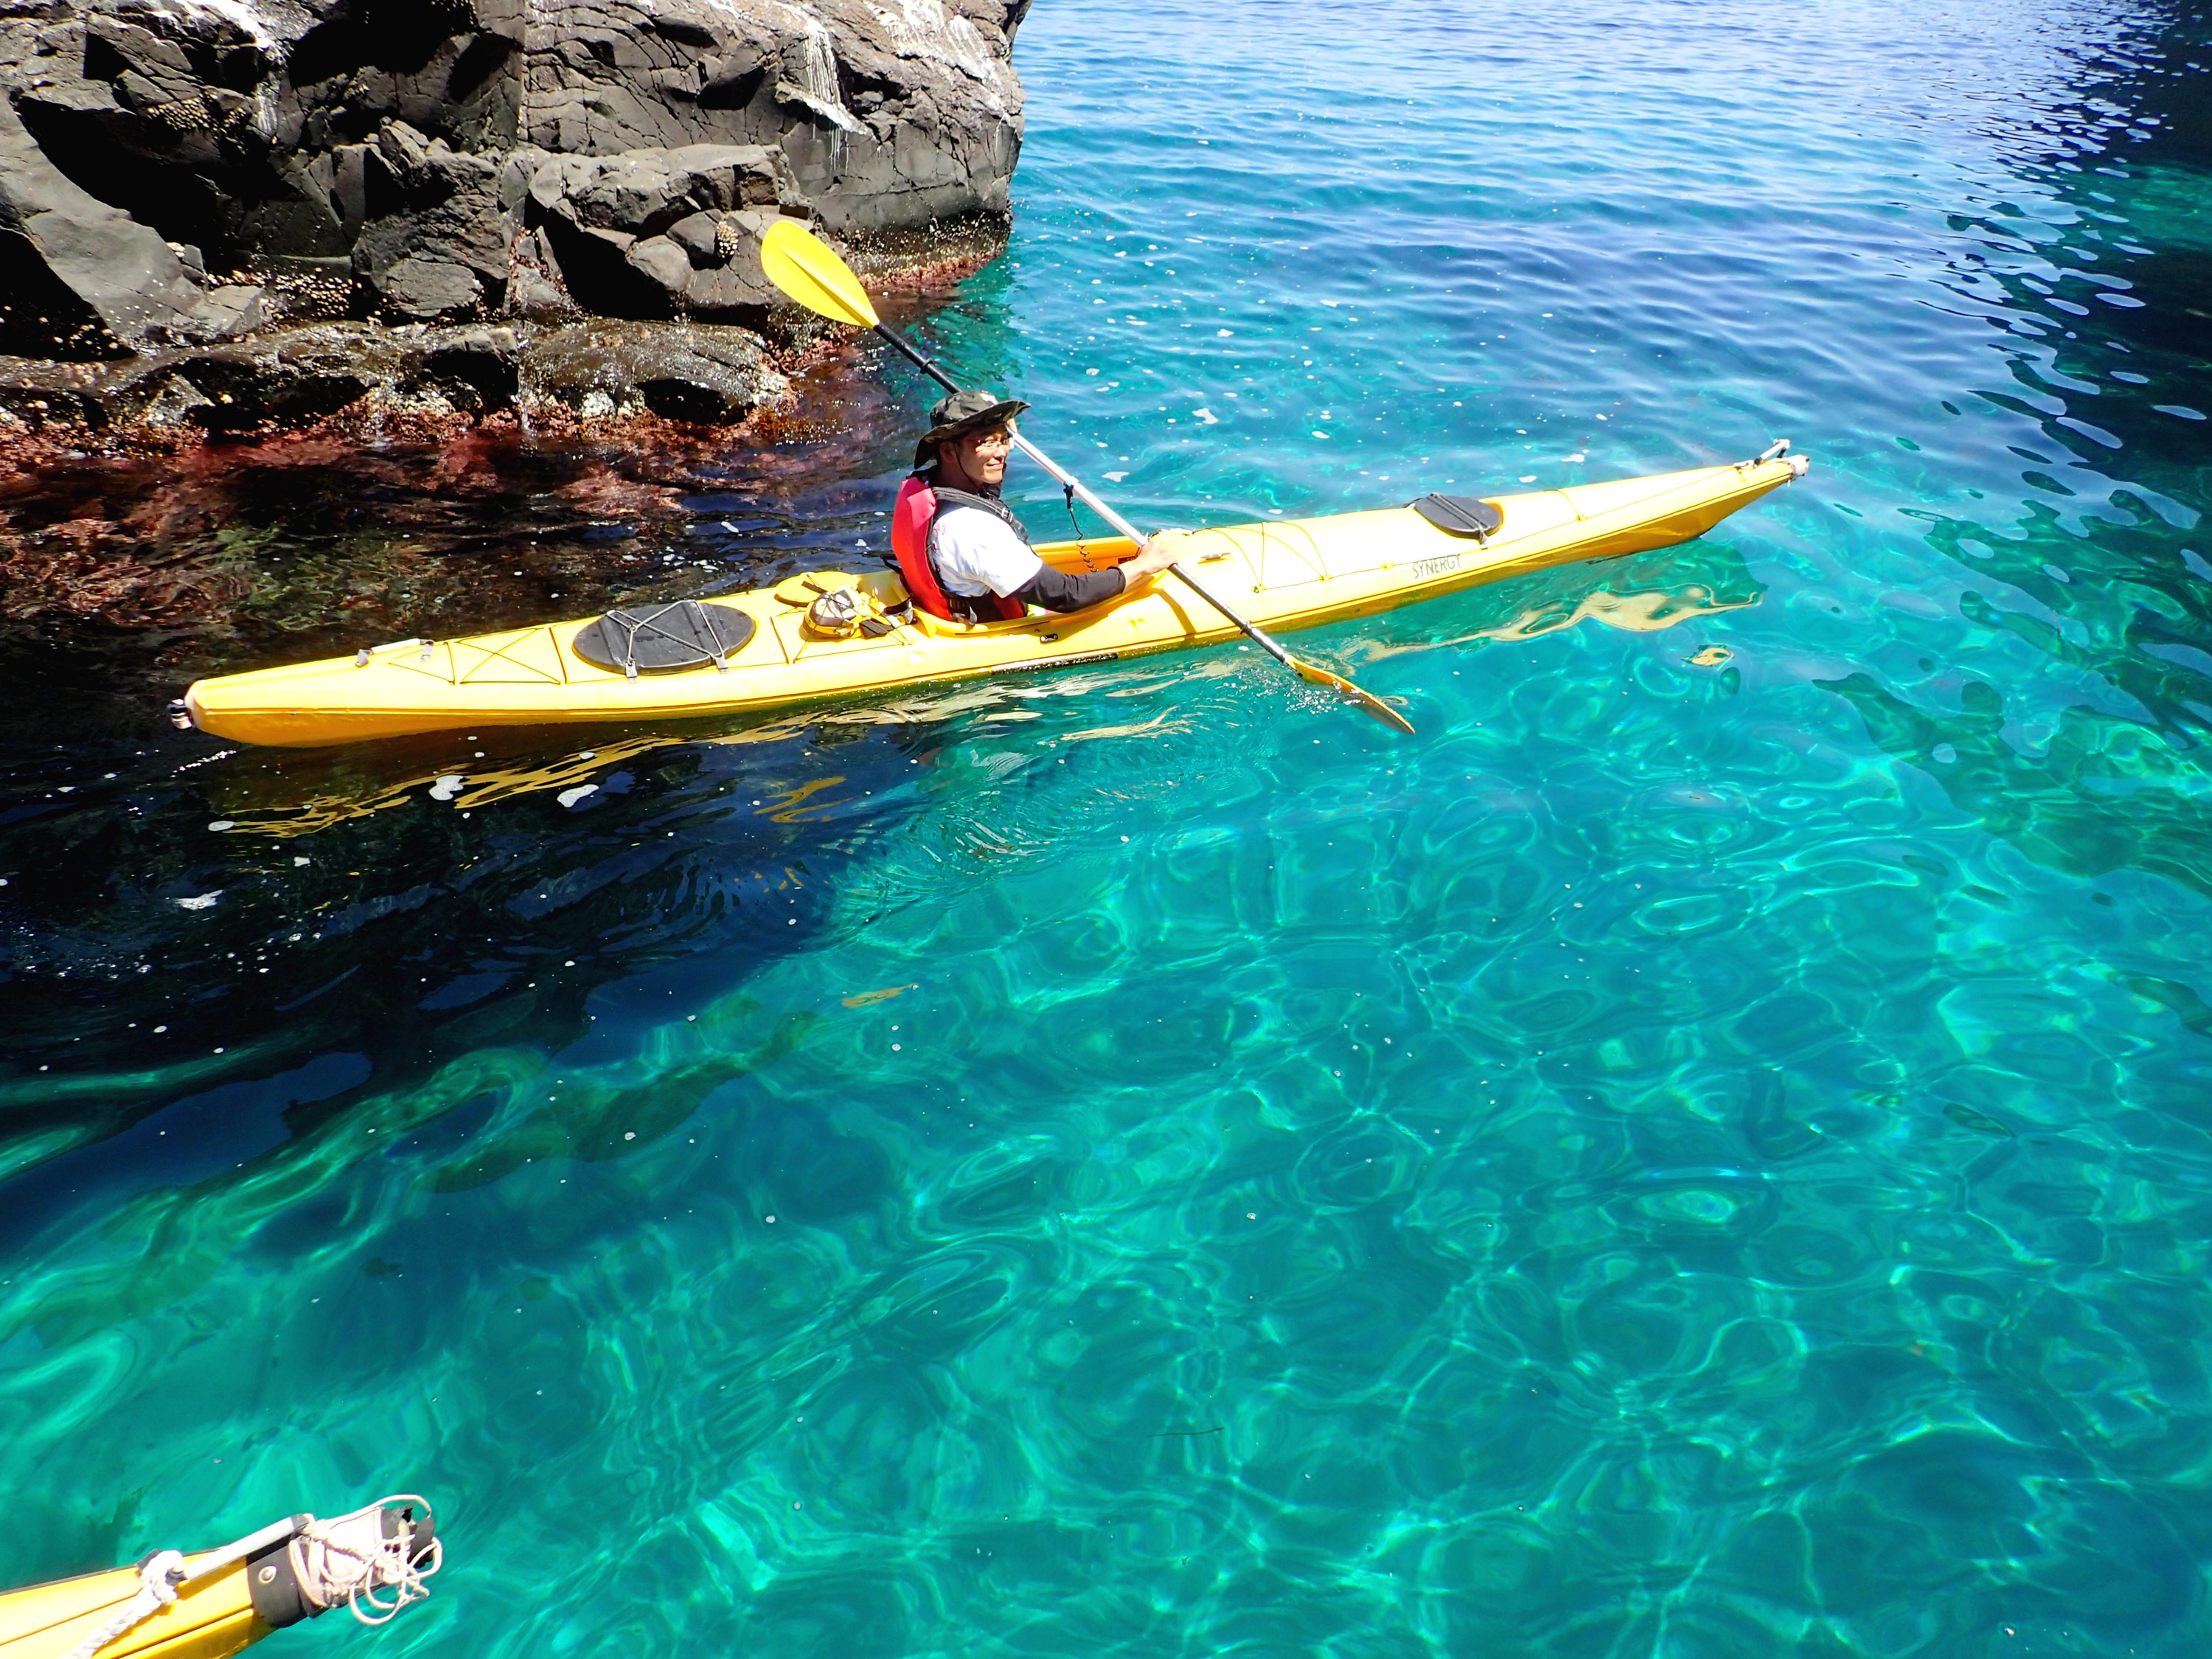 sea-kayaking